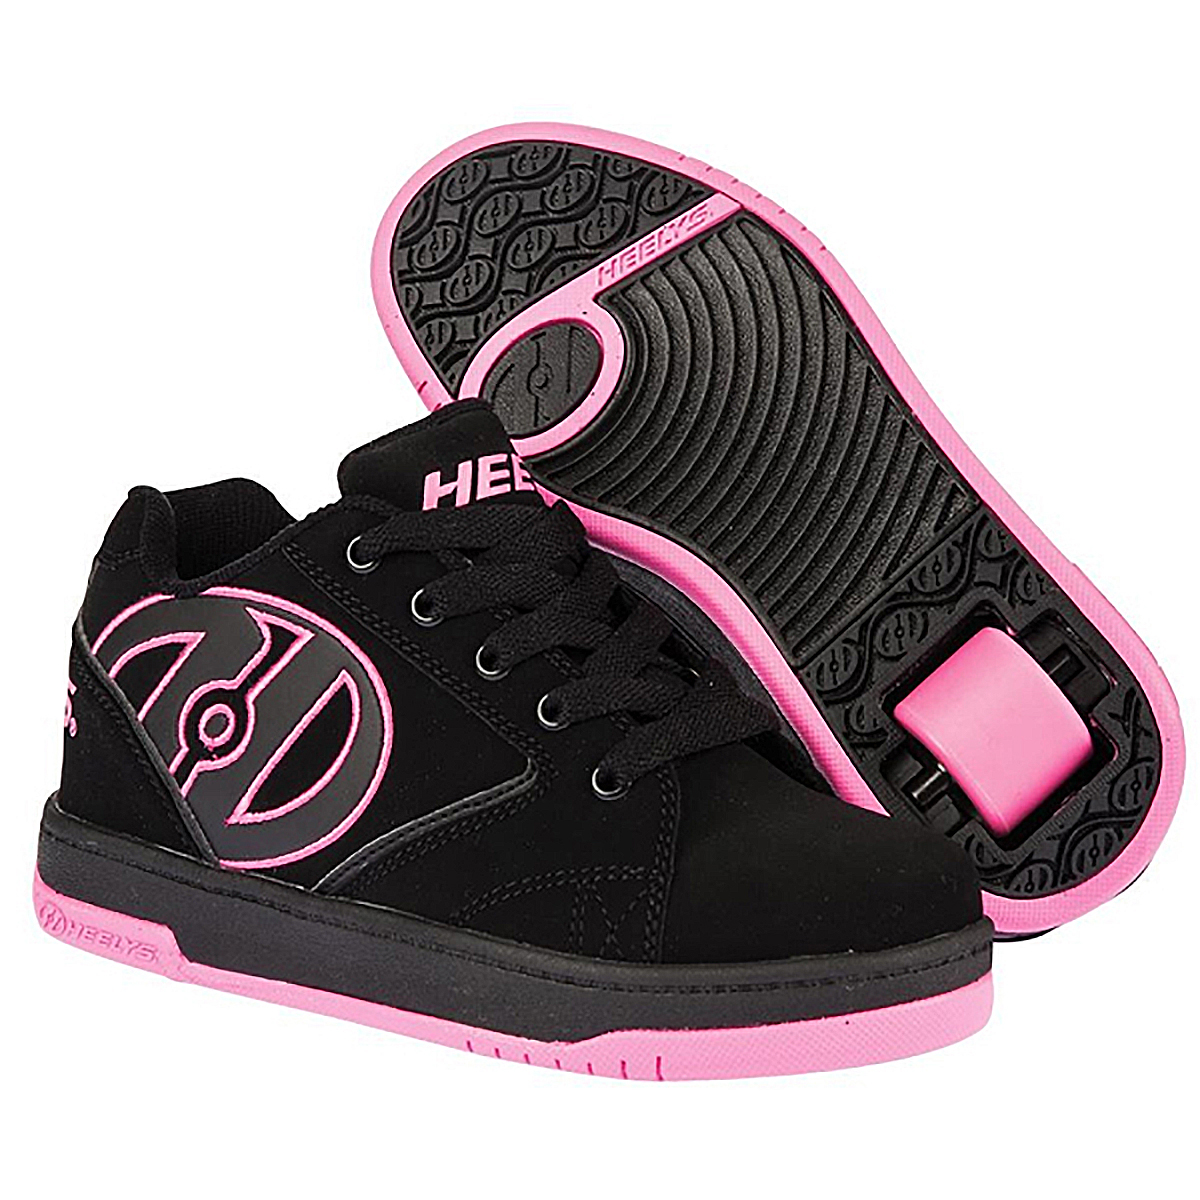 Кроссовки роликовые для девочки Heelys, цвет: черный, розовый. 770291. Размер 31 (30)